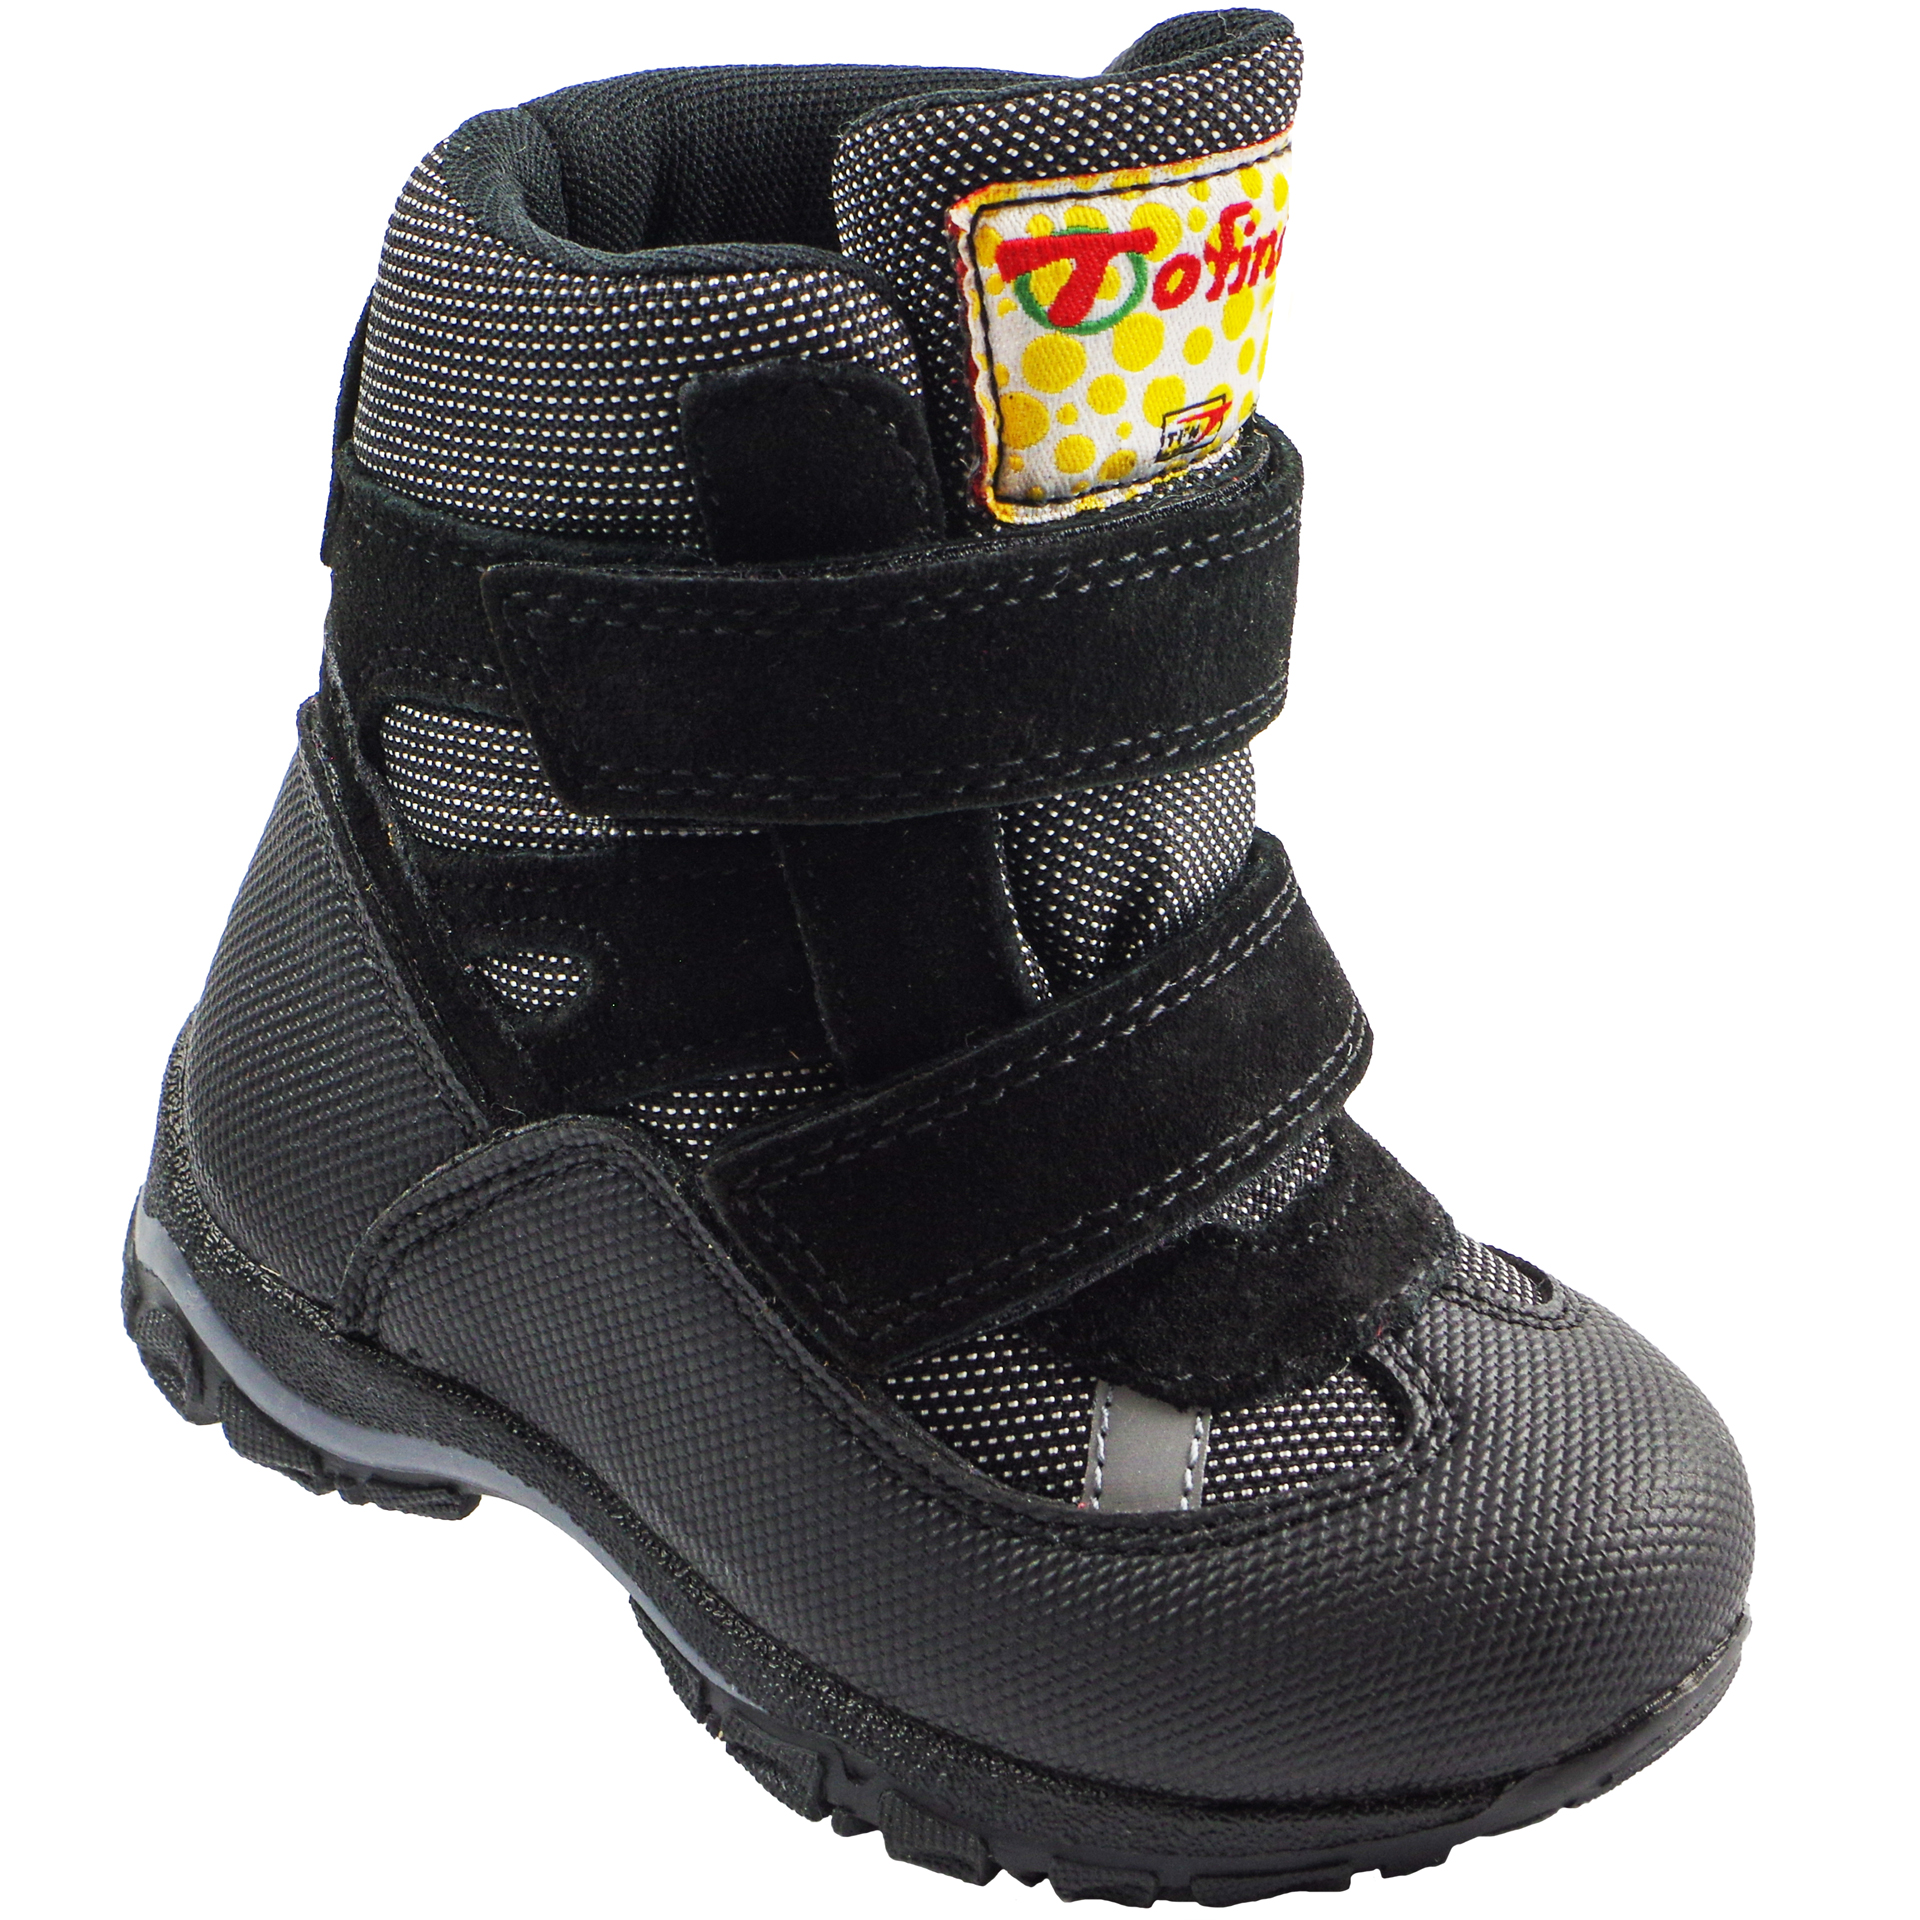 Зимние мембранные ботинки (2147) материал Мембрана, цвет Черный  для мальчиков 22-25 размеры – Sole Kids